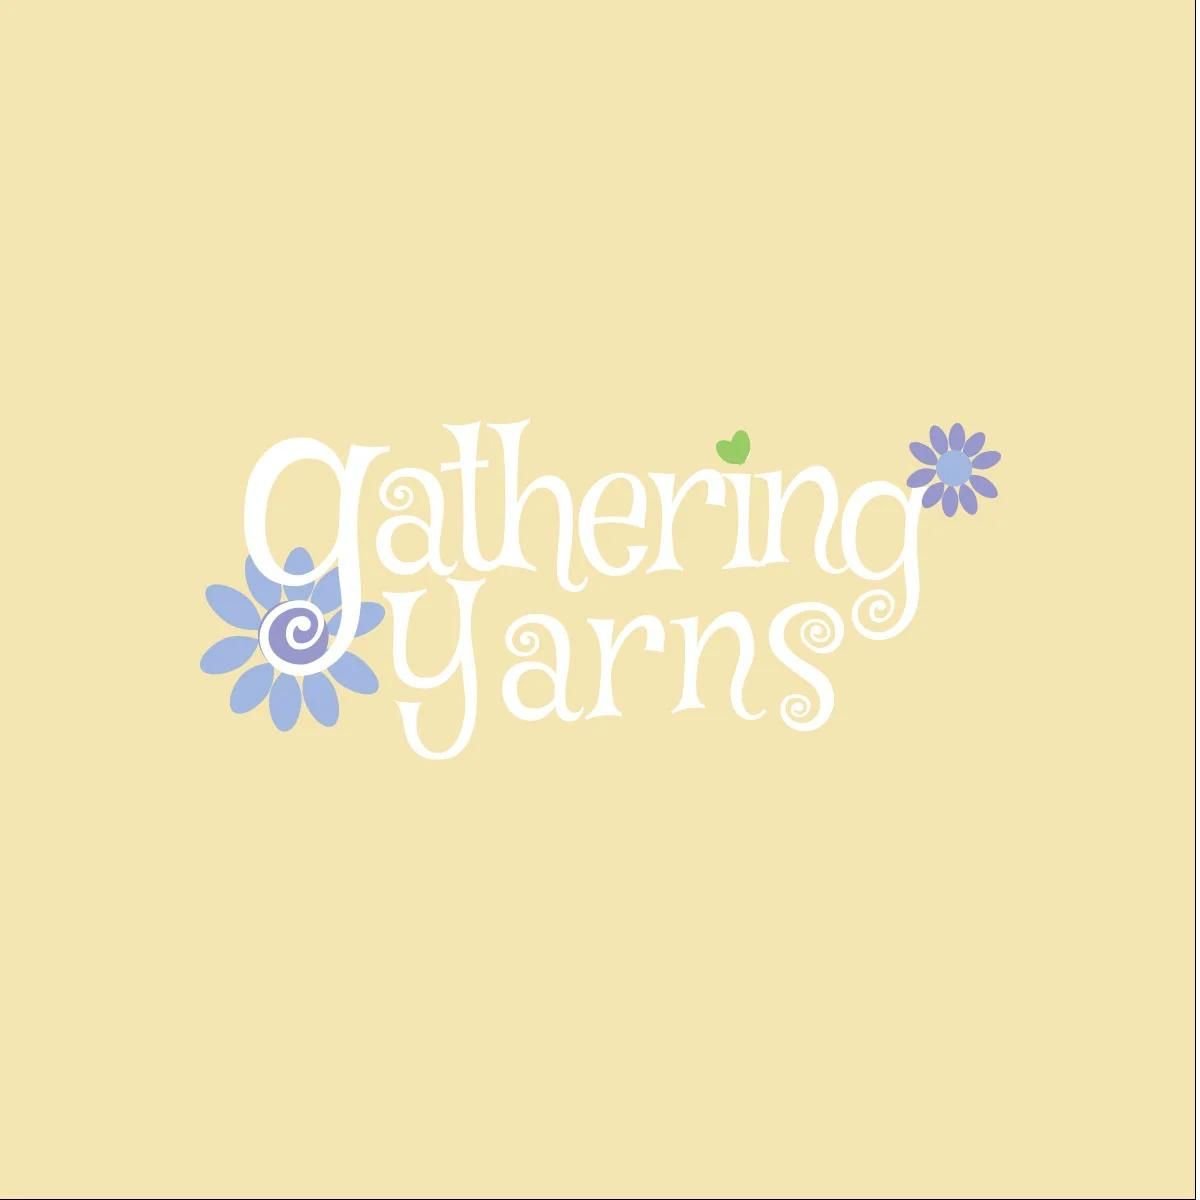 Terri of Gathering Yarns